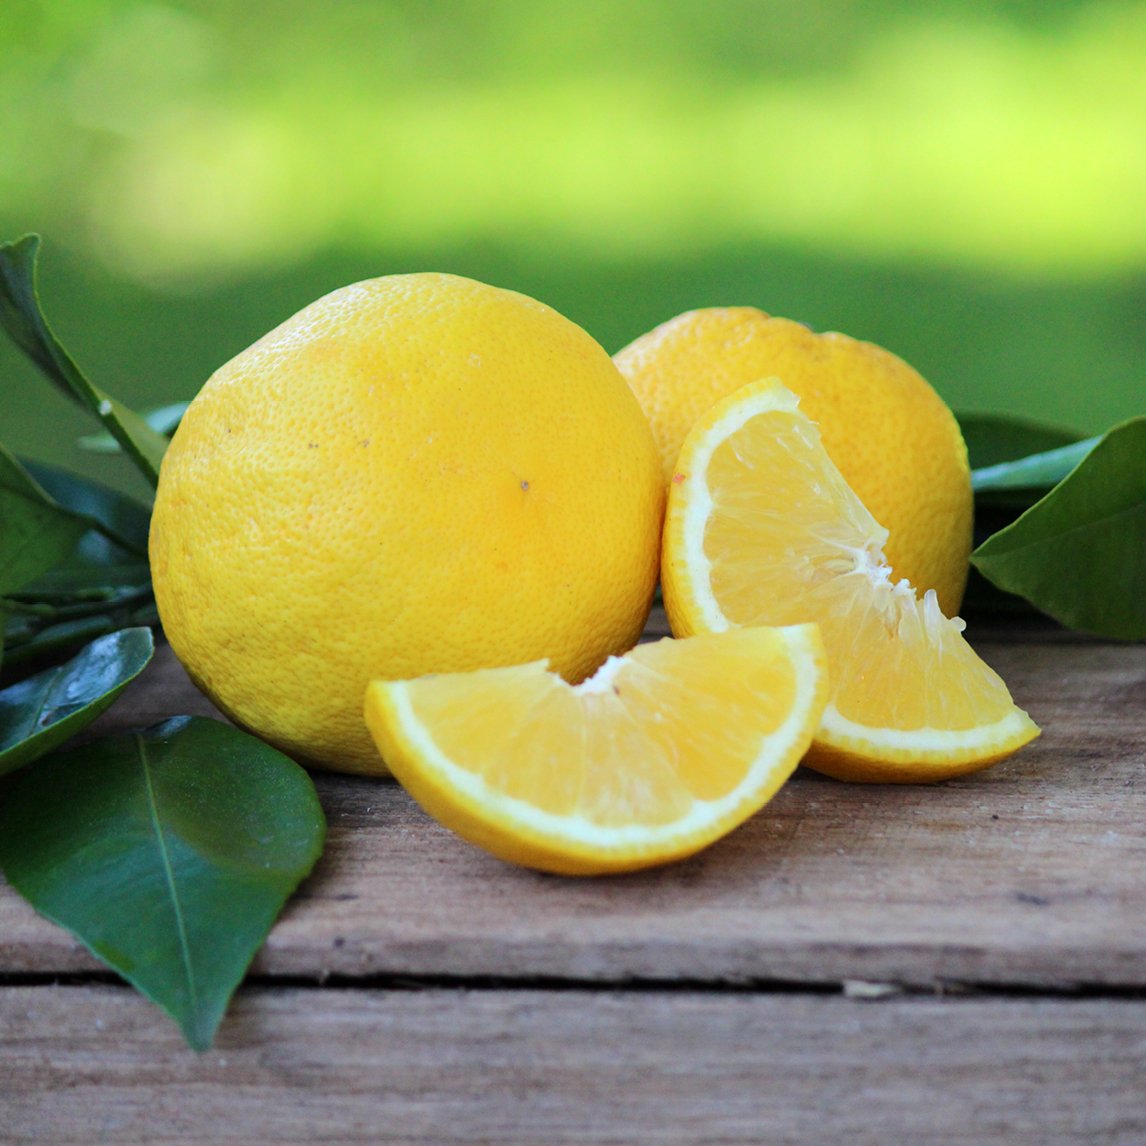 Lemon 'Lemonade' - The Diggers Club